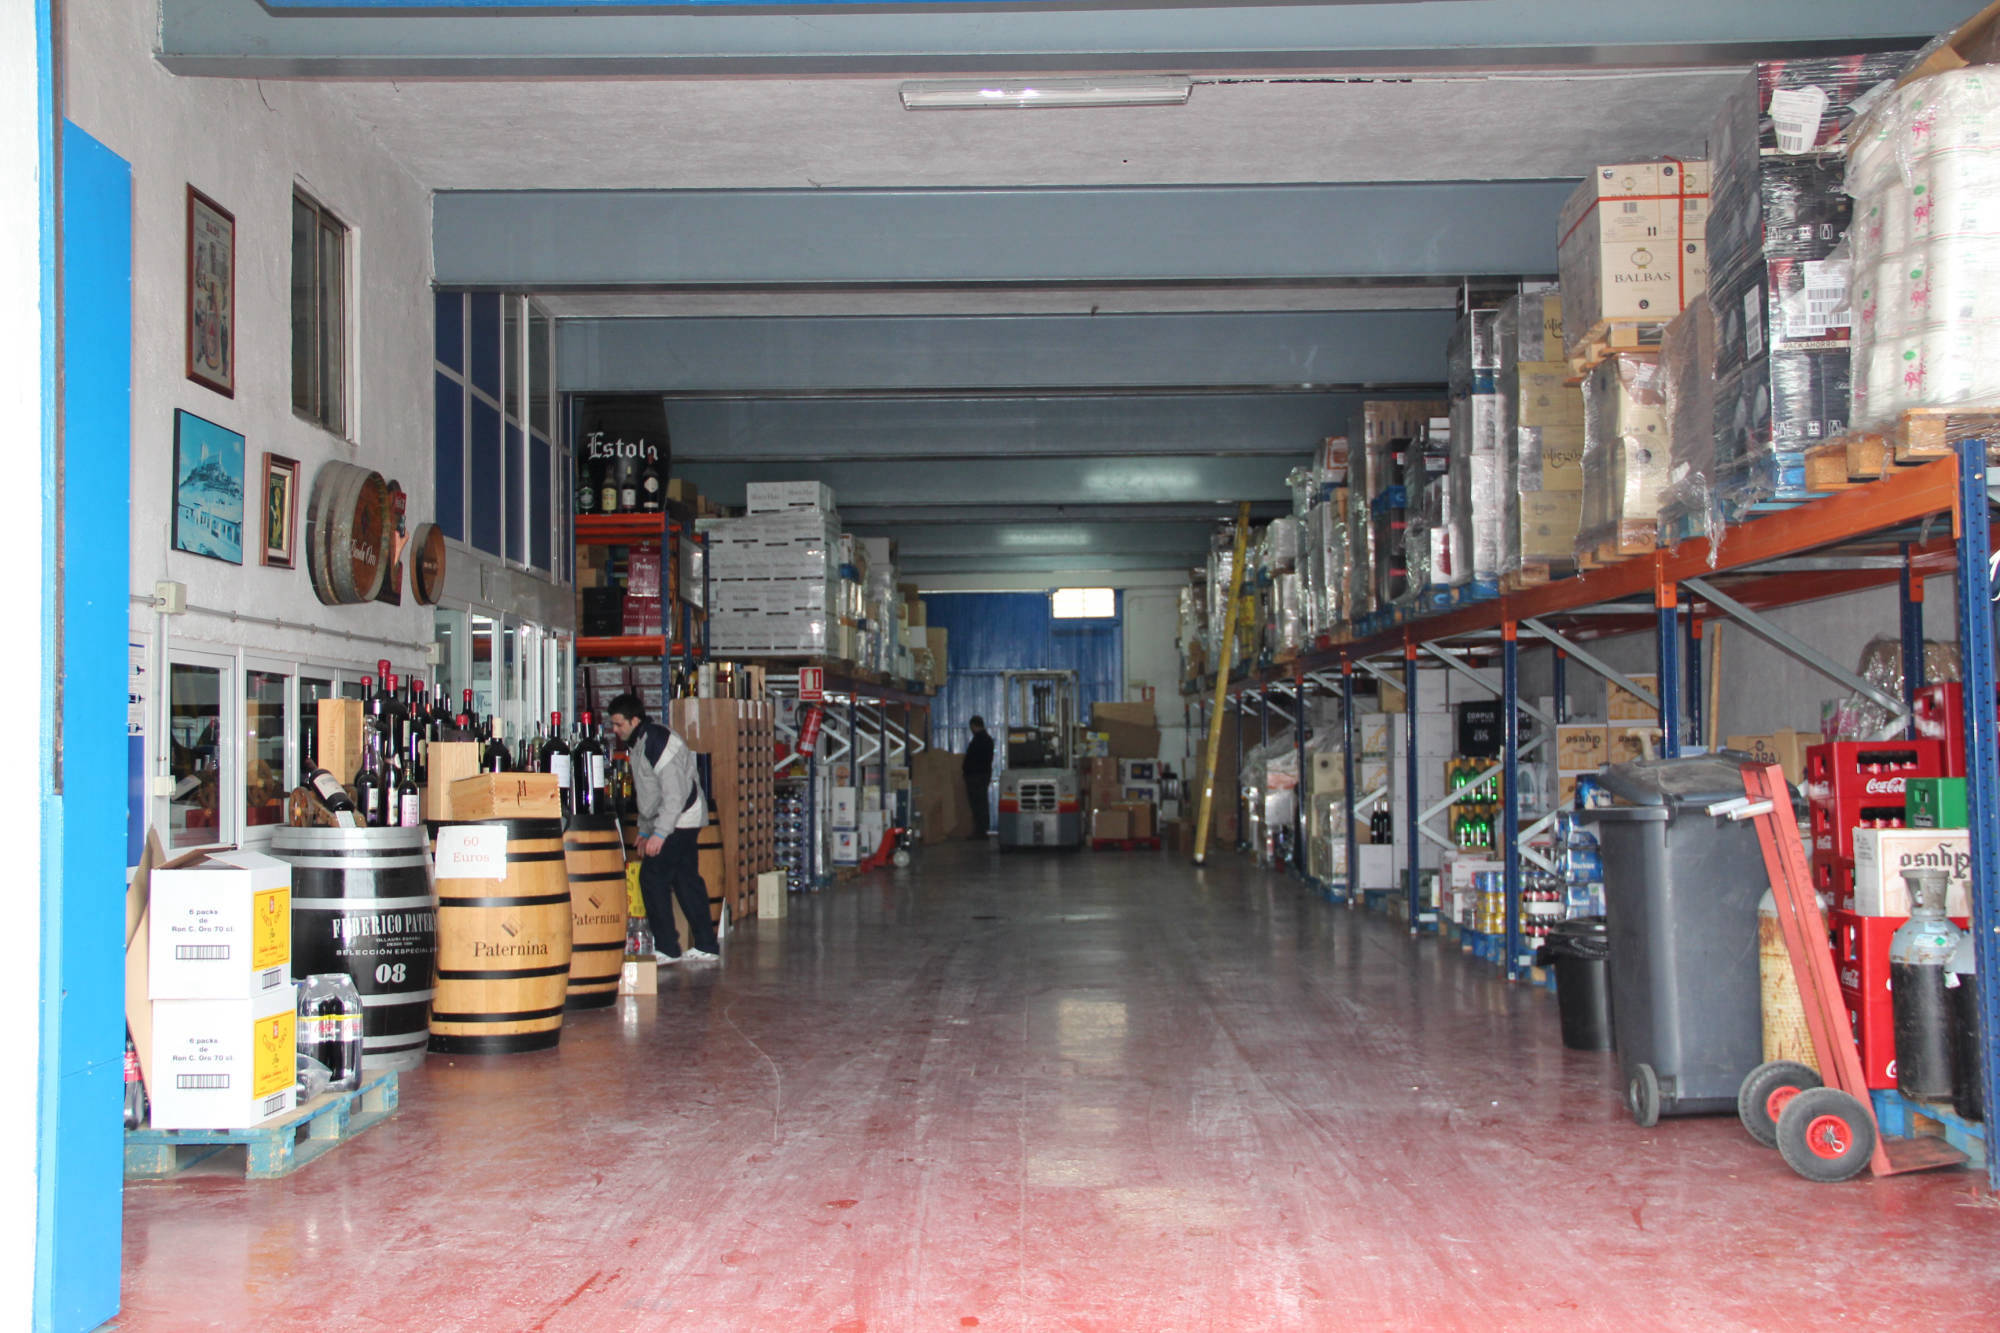 Distribuidor de vinos, cervezas, conservas, licores, alimentos, dulces, Valle del Tiétar sur de Gredos